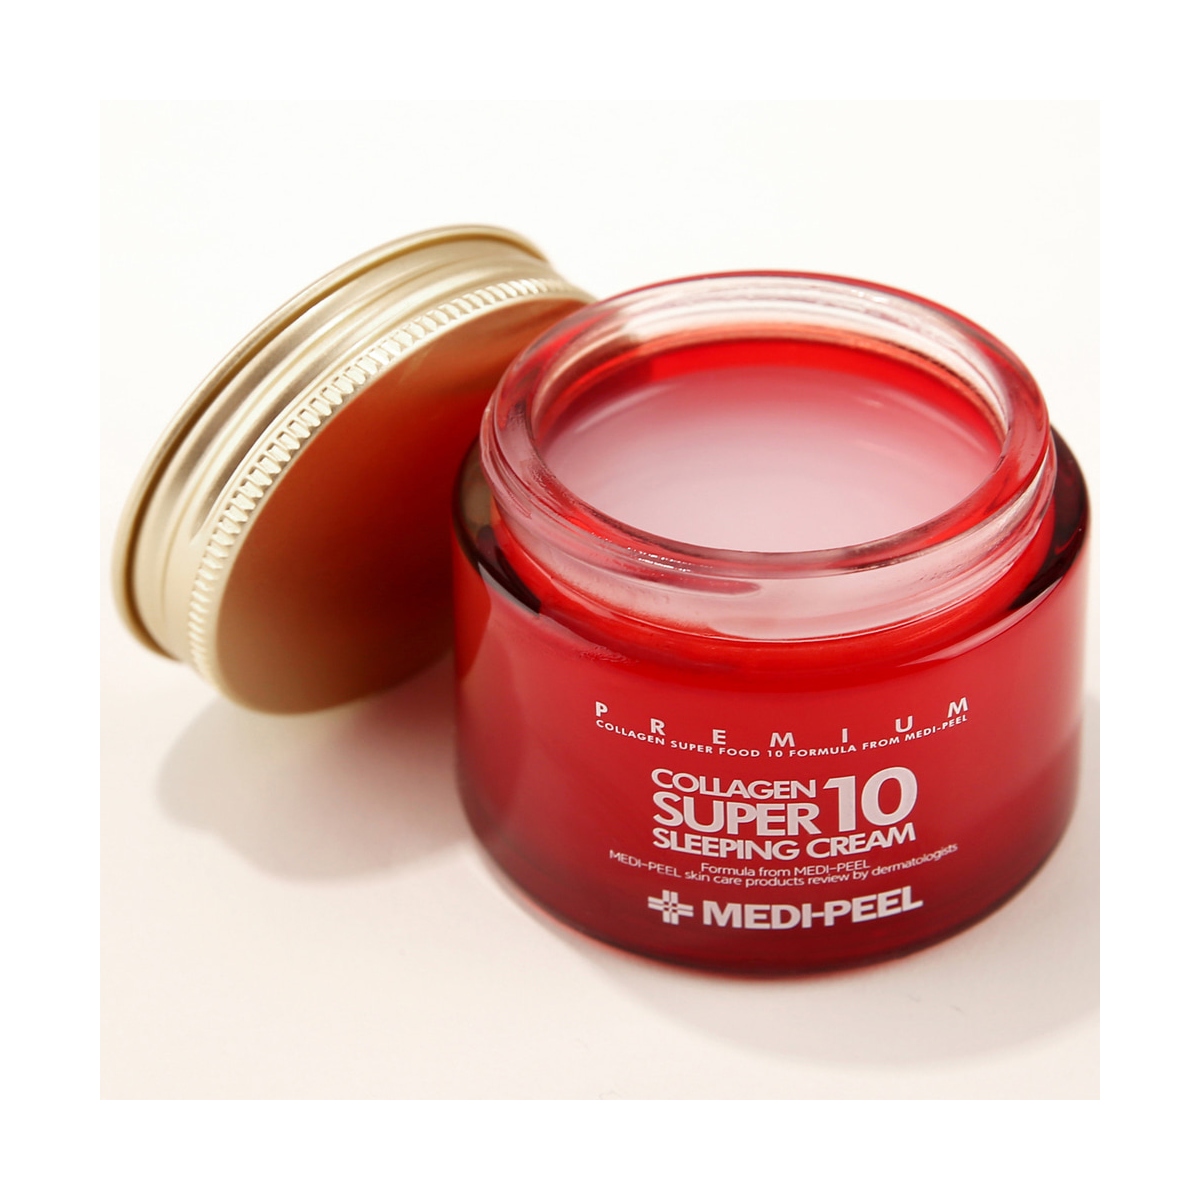 Emulsiones y Cremas al mejor precio: Crema con colágeno Medi-Peel Collagen Super 10 Sleeping Cream de Medi-peel en Skin Thinks - Piel Sensible